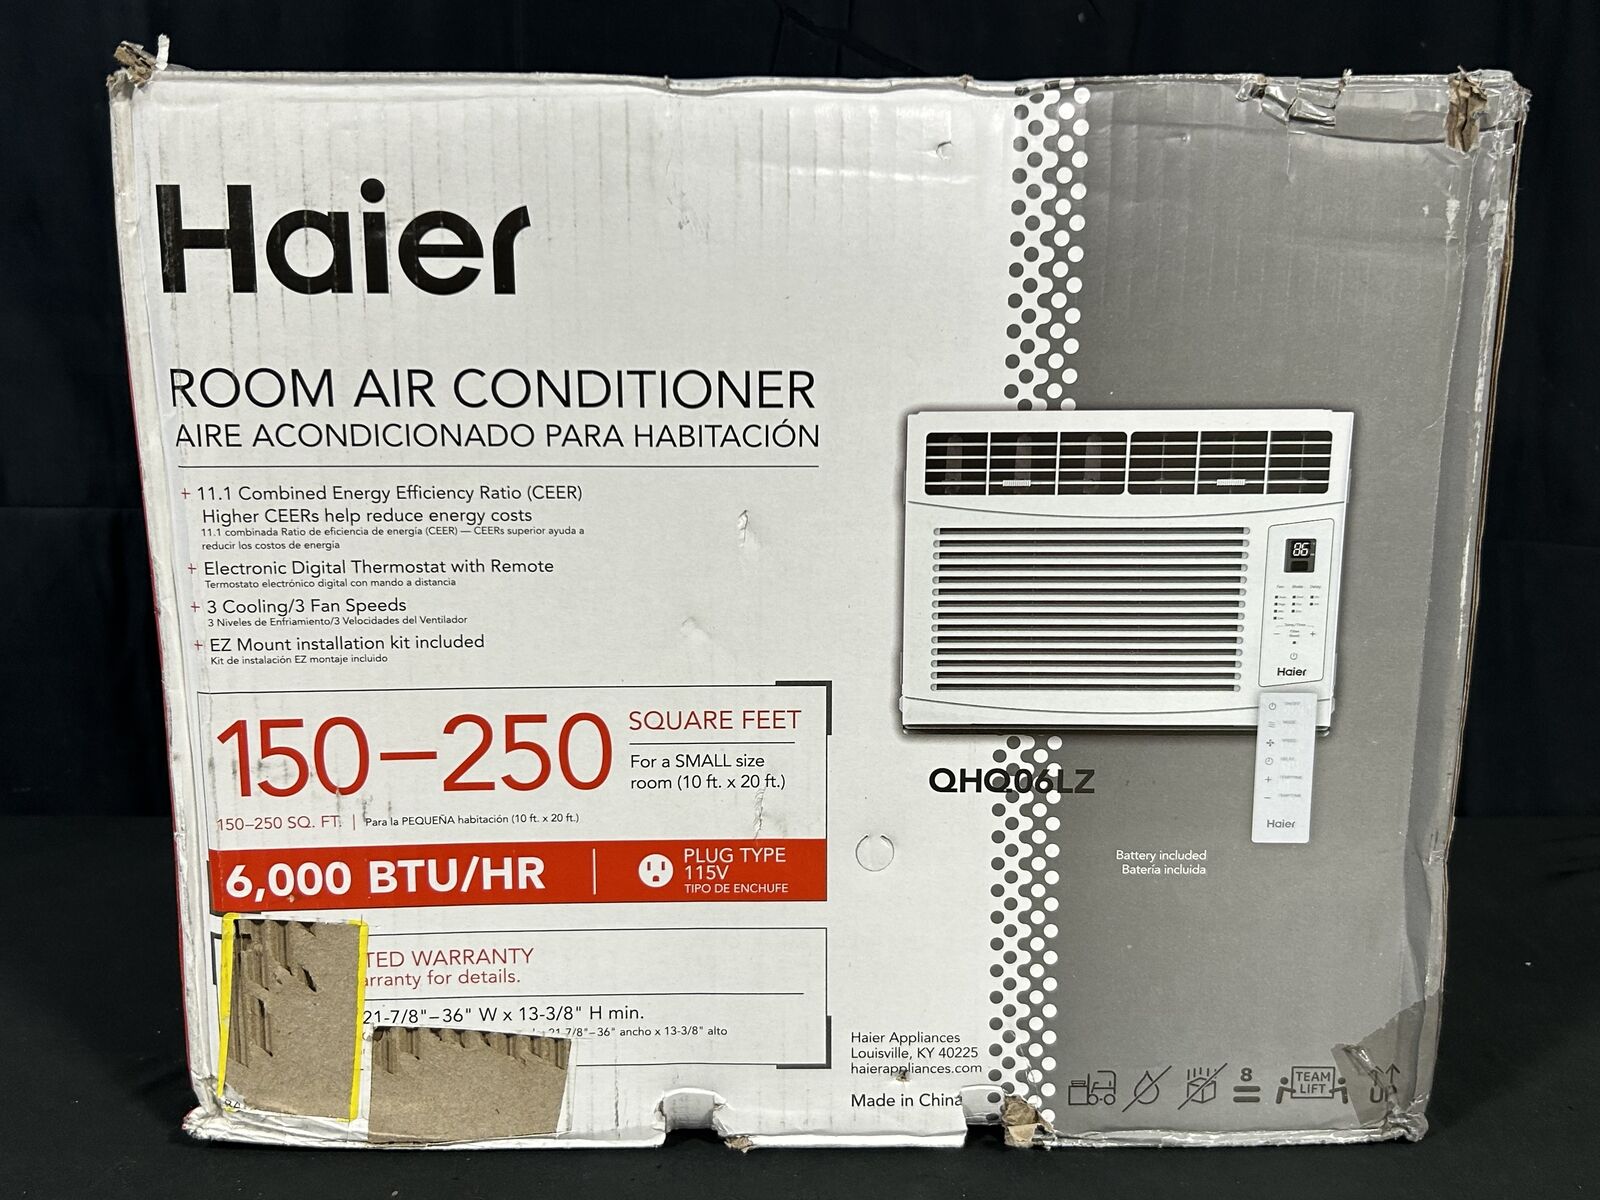 Haier Appliances (@HaierAppliances) / X